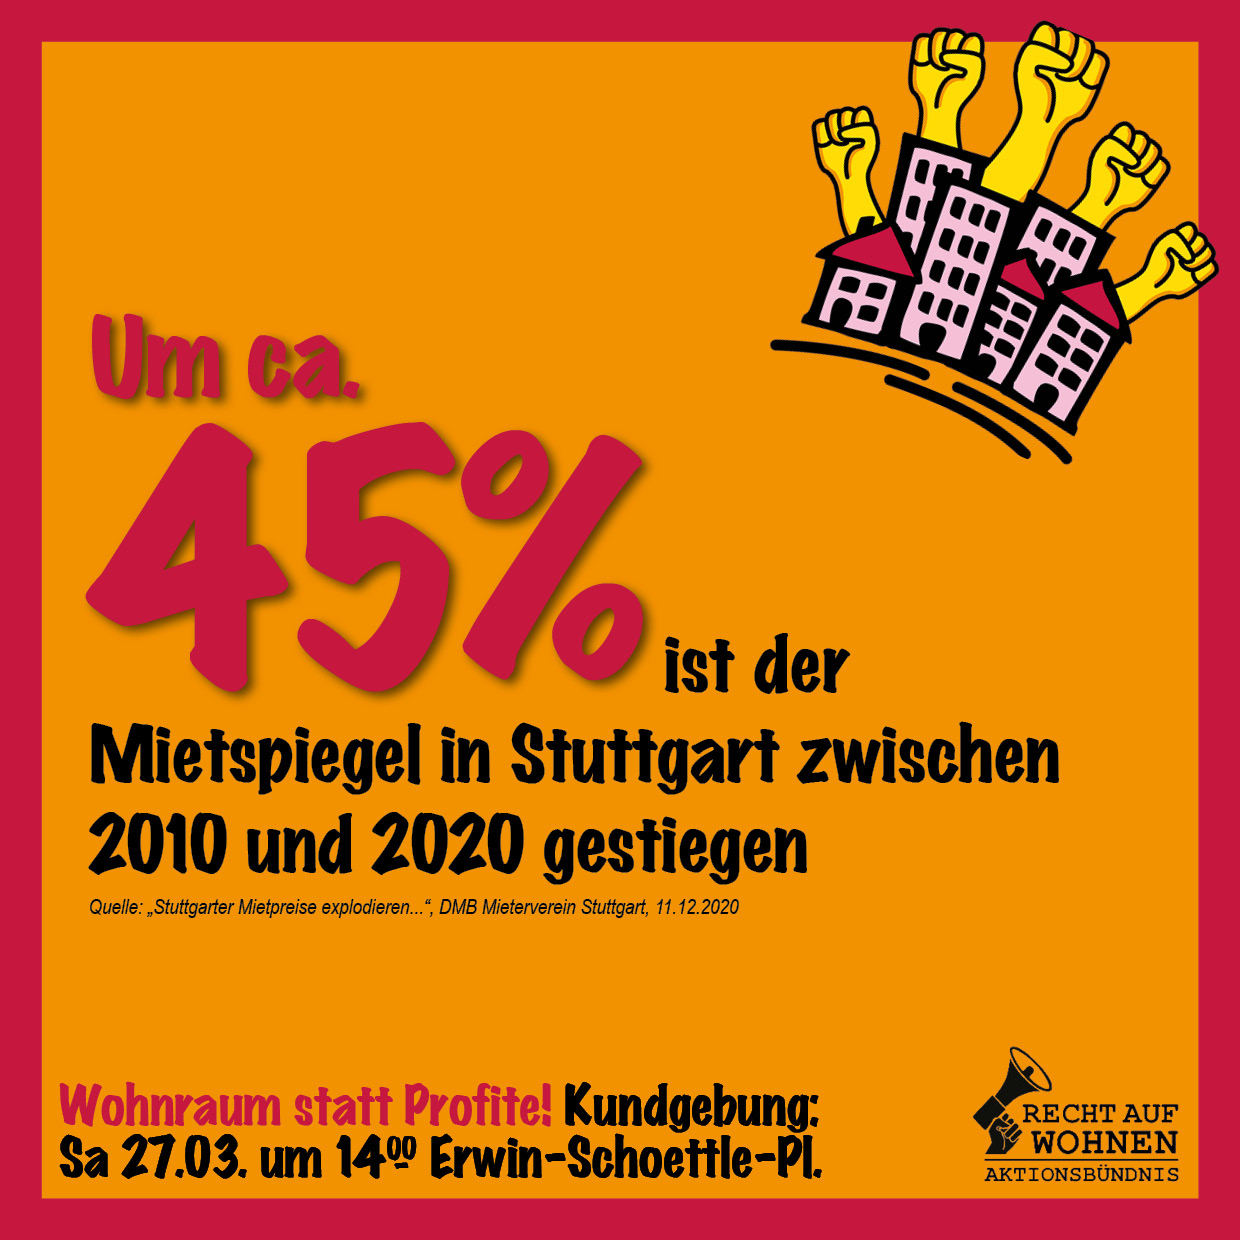 Stuttgart: Mietspiegel stieg in zehn Jahren um 45%